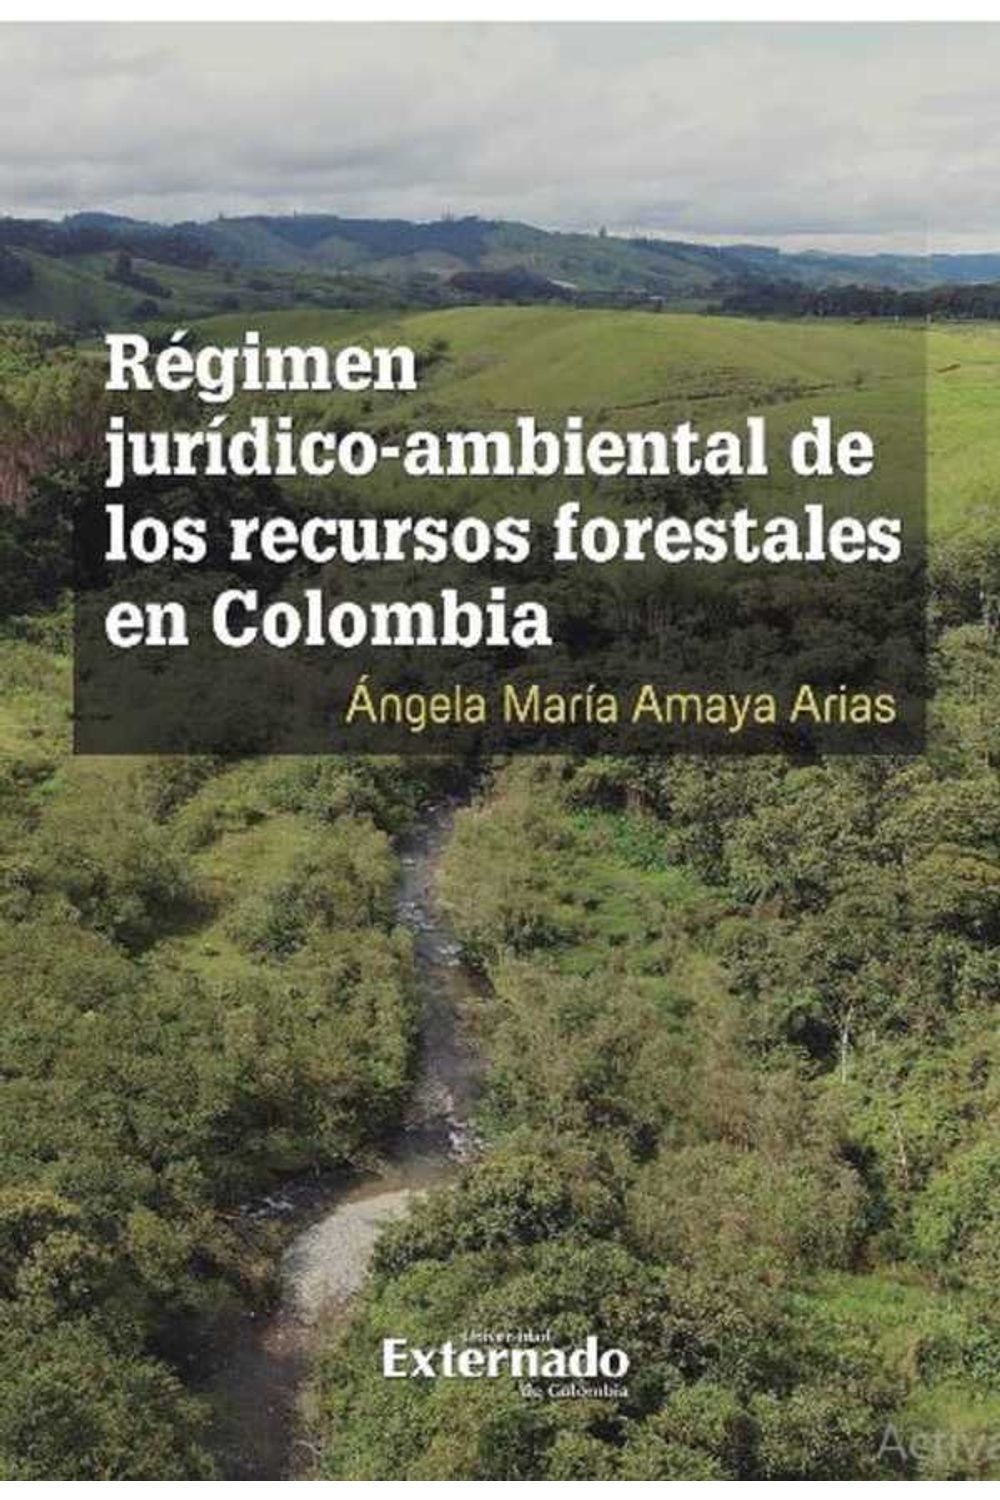 bw-reacutegimen-juriacutedicoambiental-de-los-recursos-forestales-en-colombia-u-externado-de-colombia-9789587904239